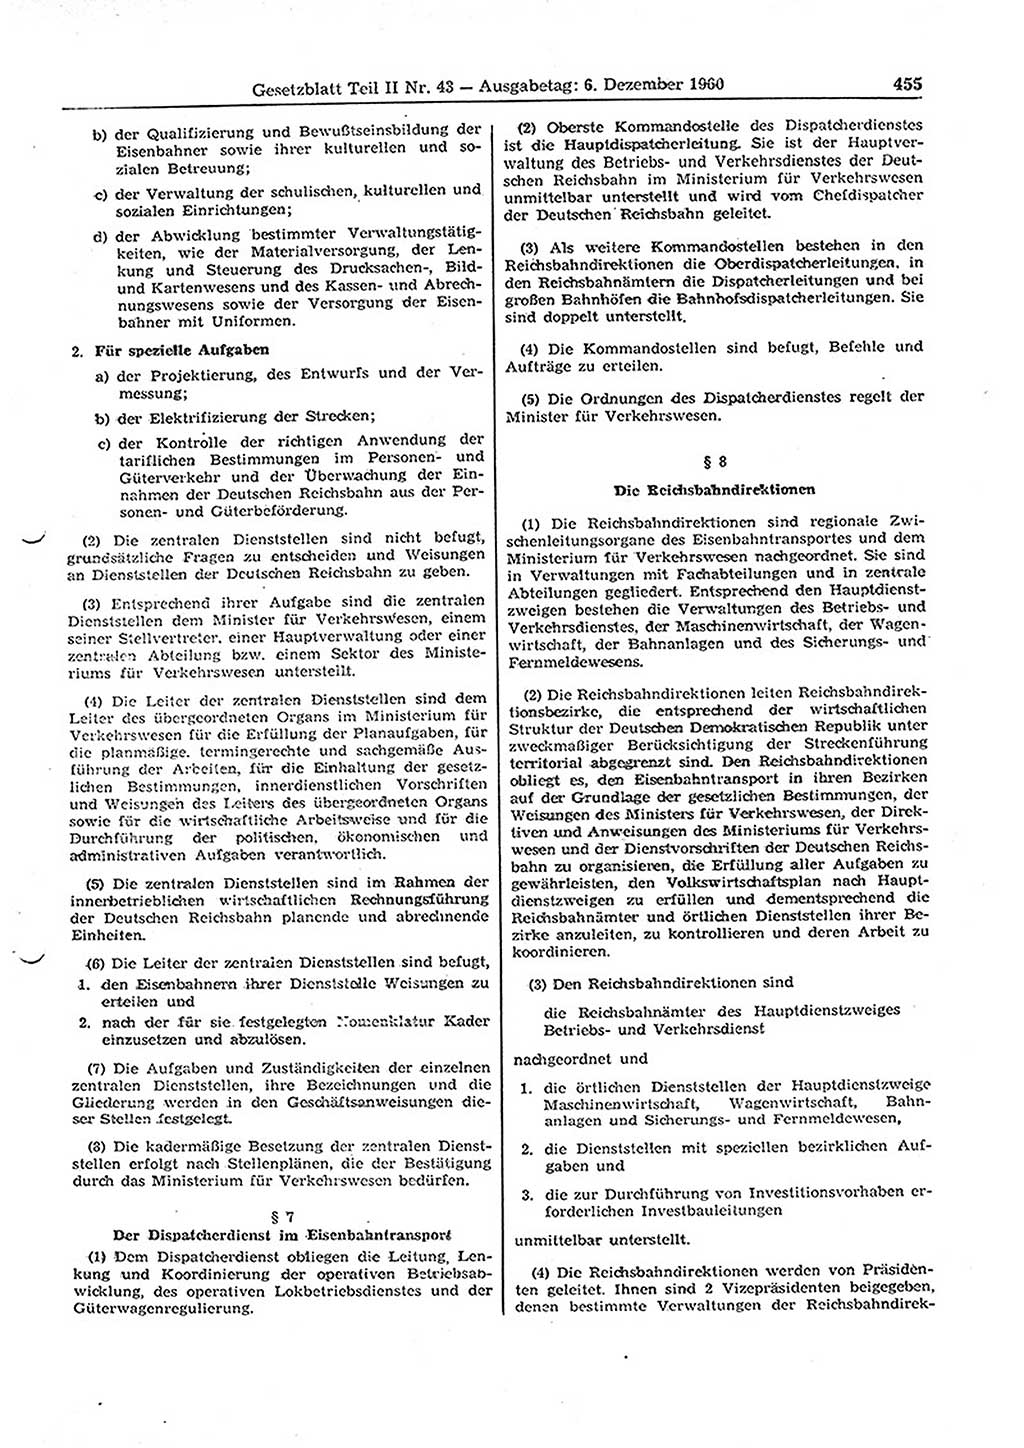 Gesetzblatt (GBl.) der Deutschen Demokratischen Republik (DDR) Teil ⅠⅠ 1960, Seite 455 (GBl. DDR ⅠⅠ 1960, S. 455)